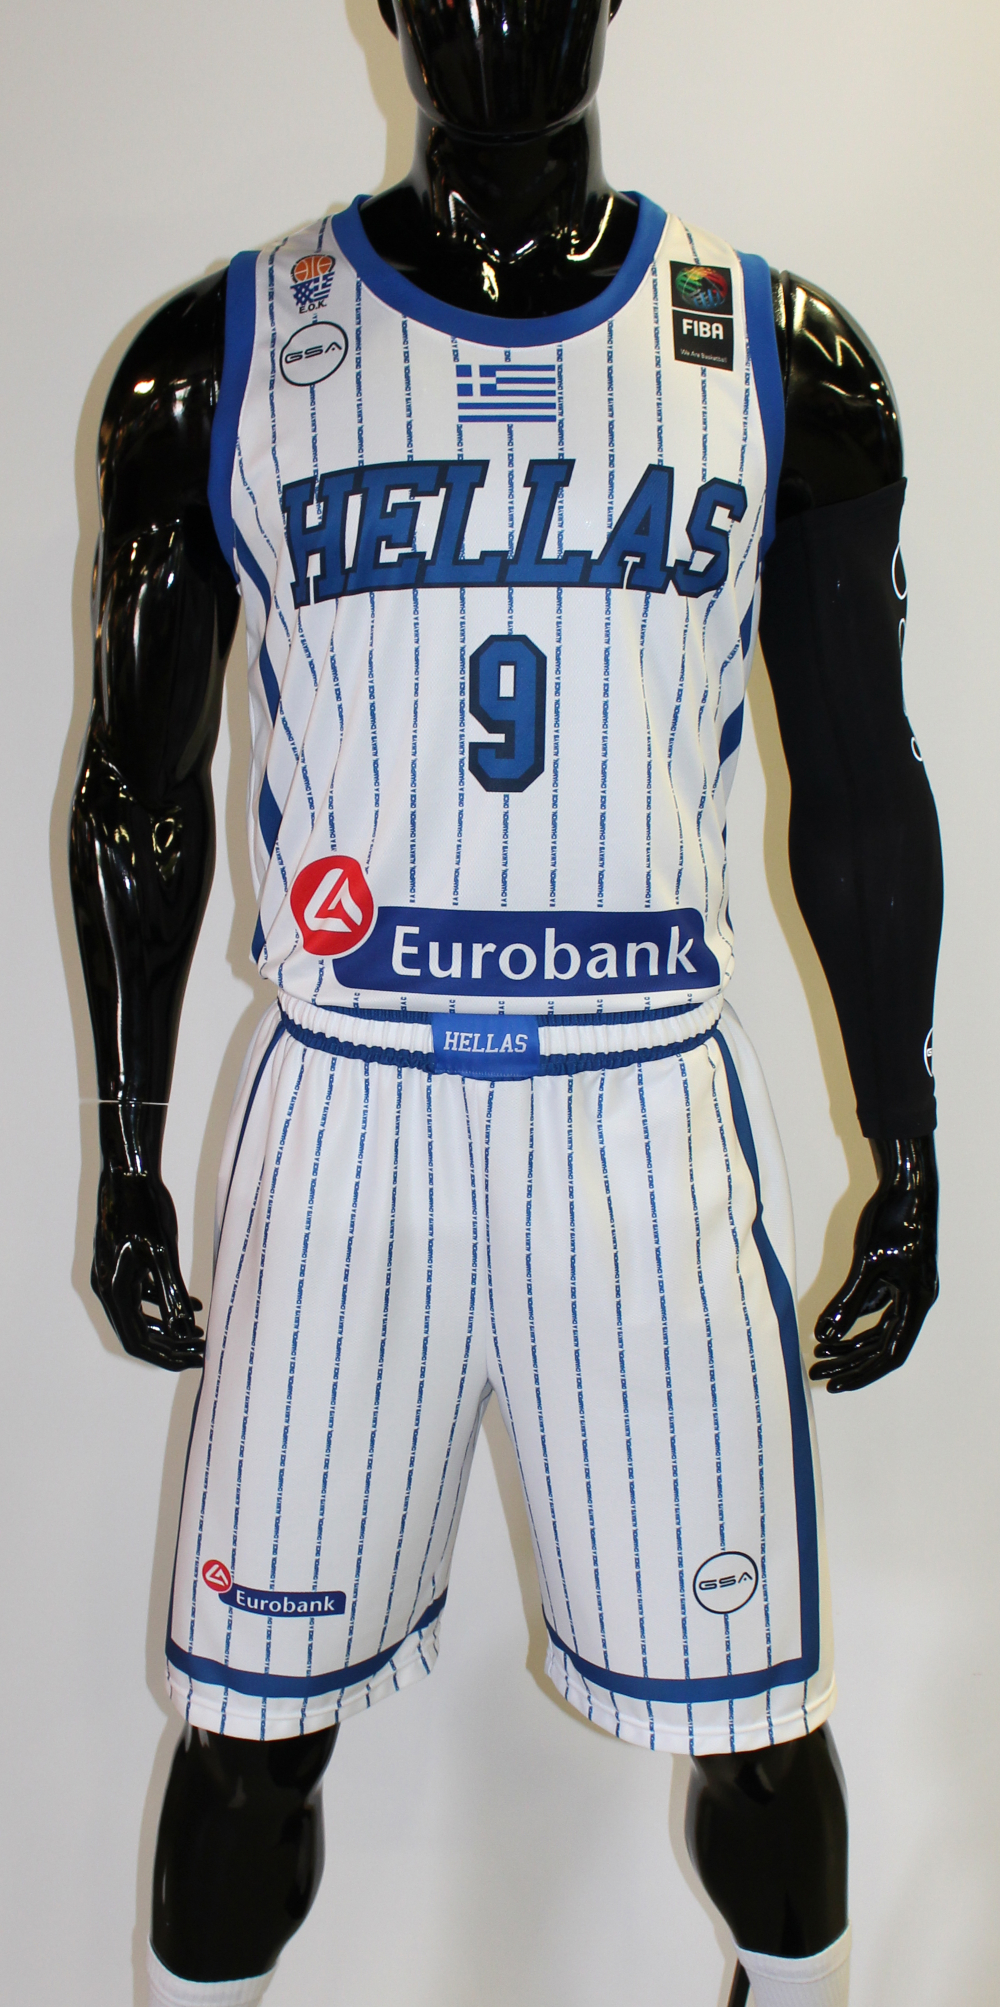 greek national team basketball jersey